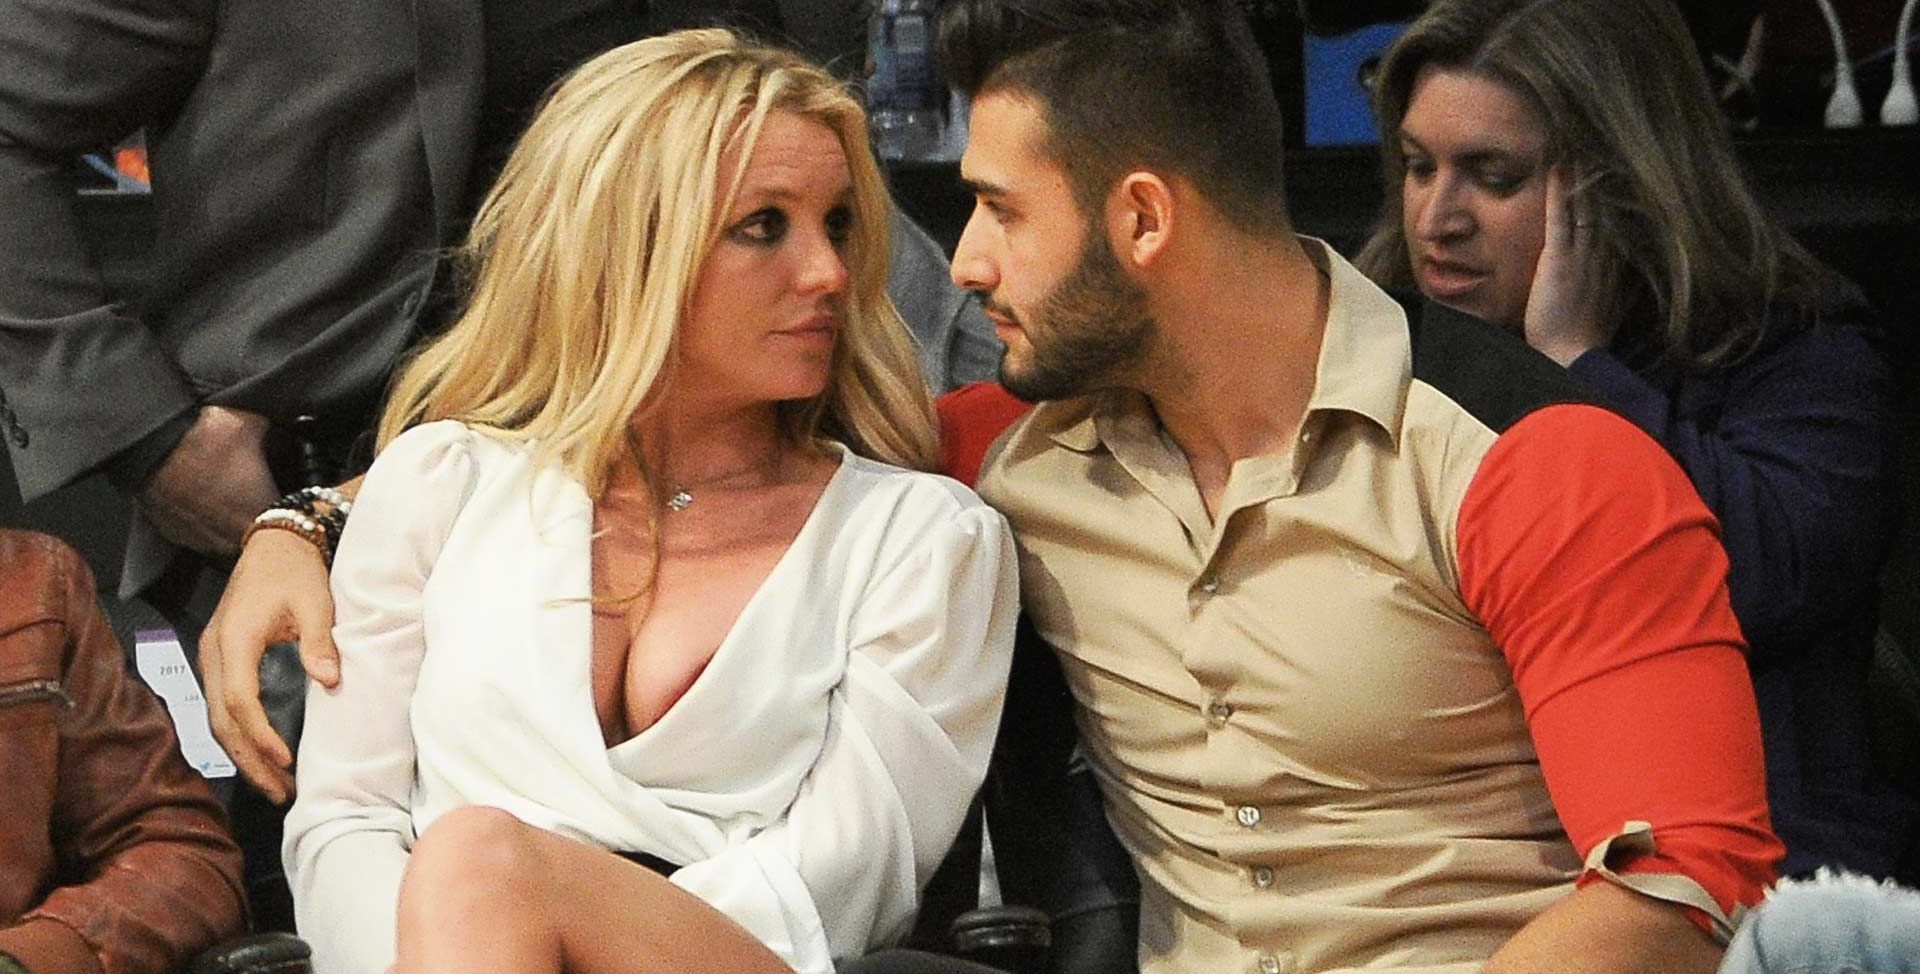 Os fãs acham que Sam Asghari apenas antecipou o que vai acontecer com Britney Spears